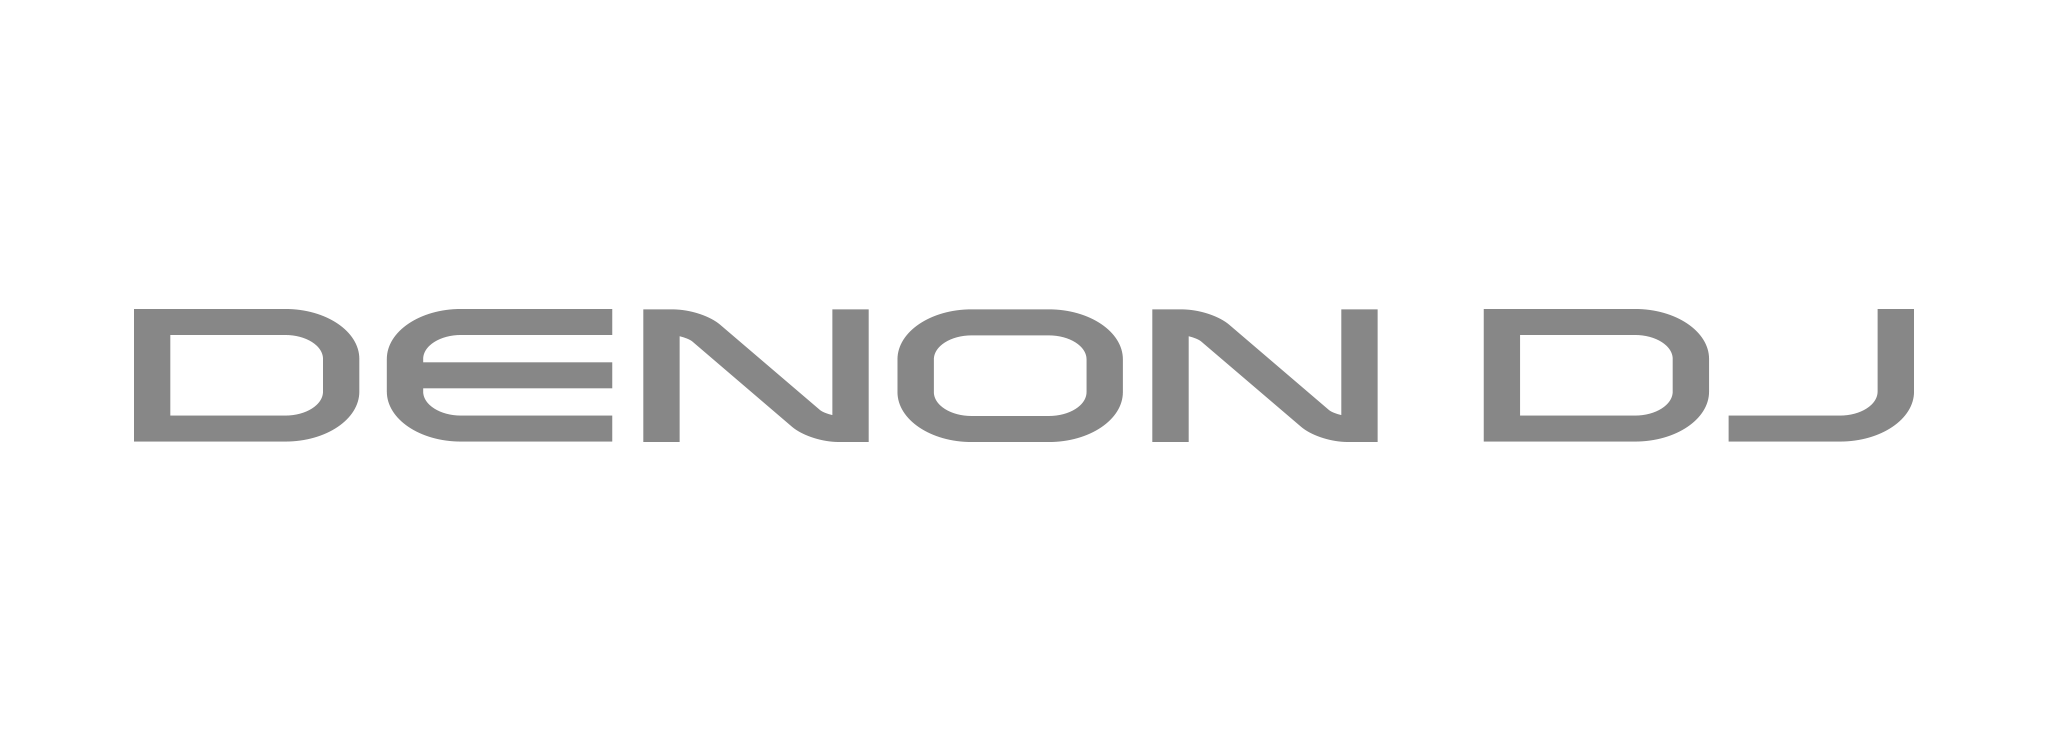 Denon DJ Logo